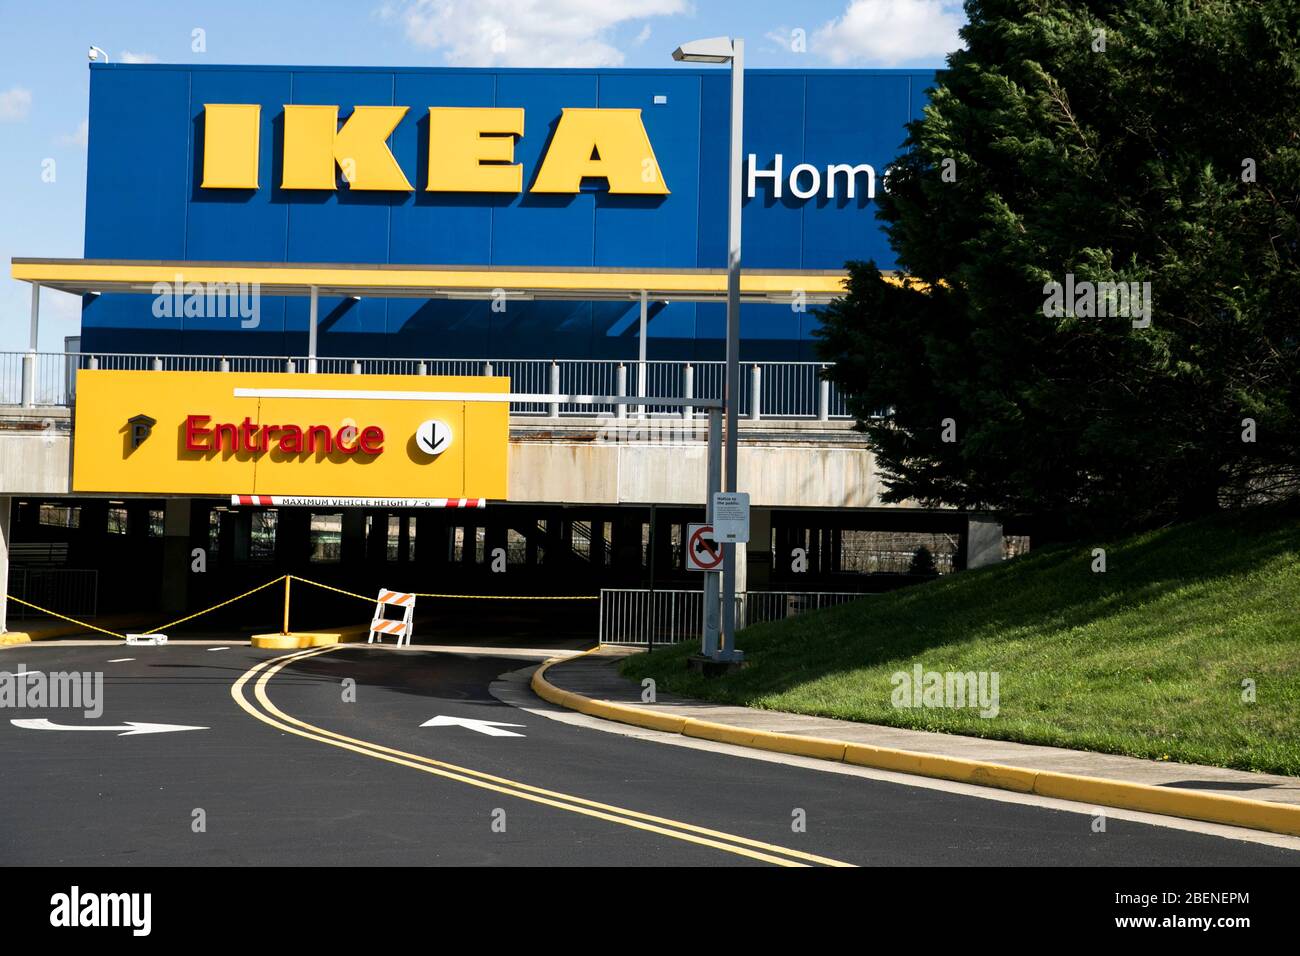 Ikea Store Banque D Image Et Photos Page 9 Alamy